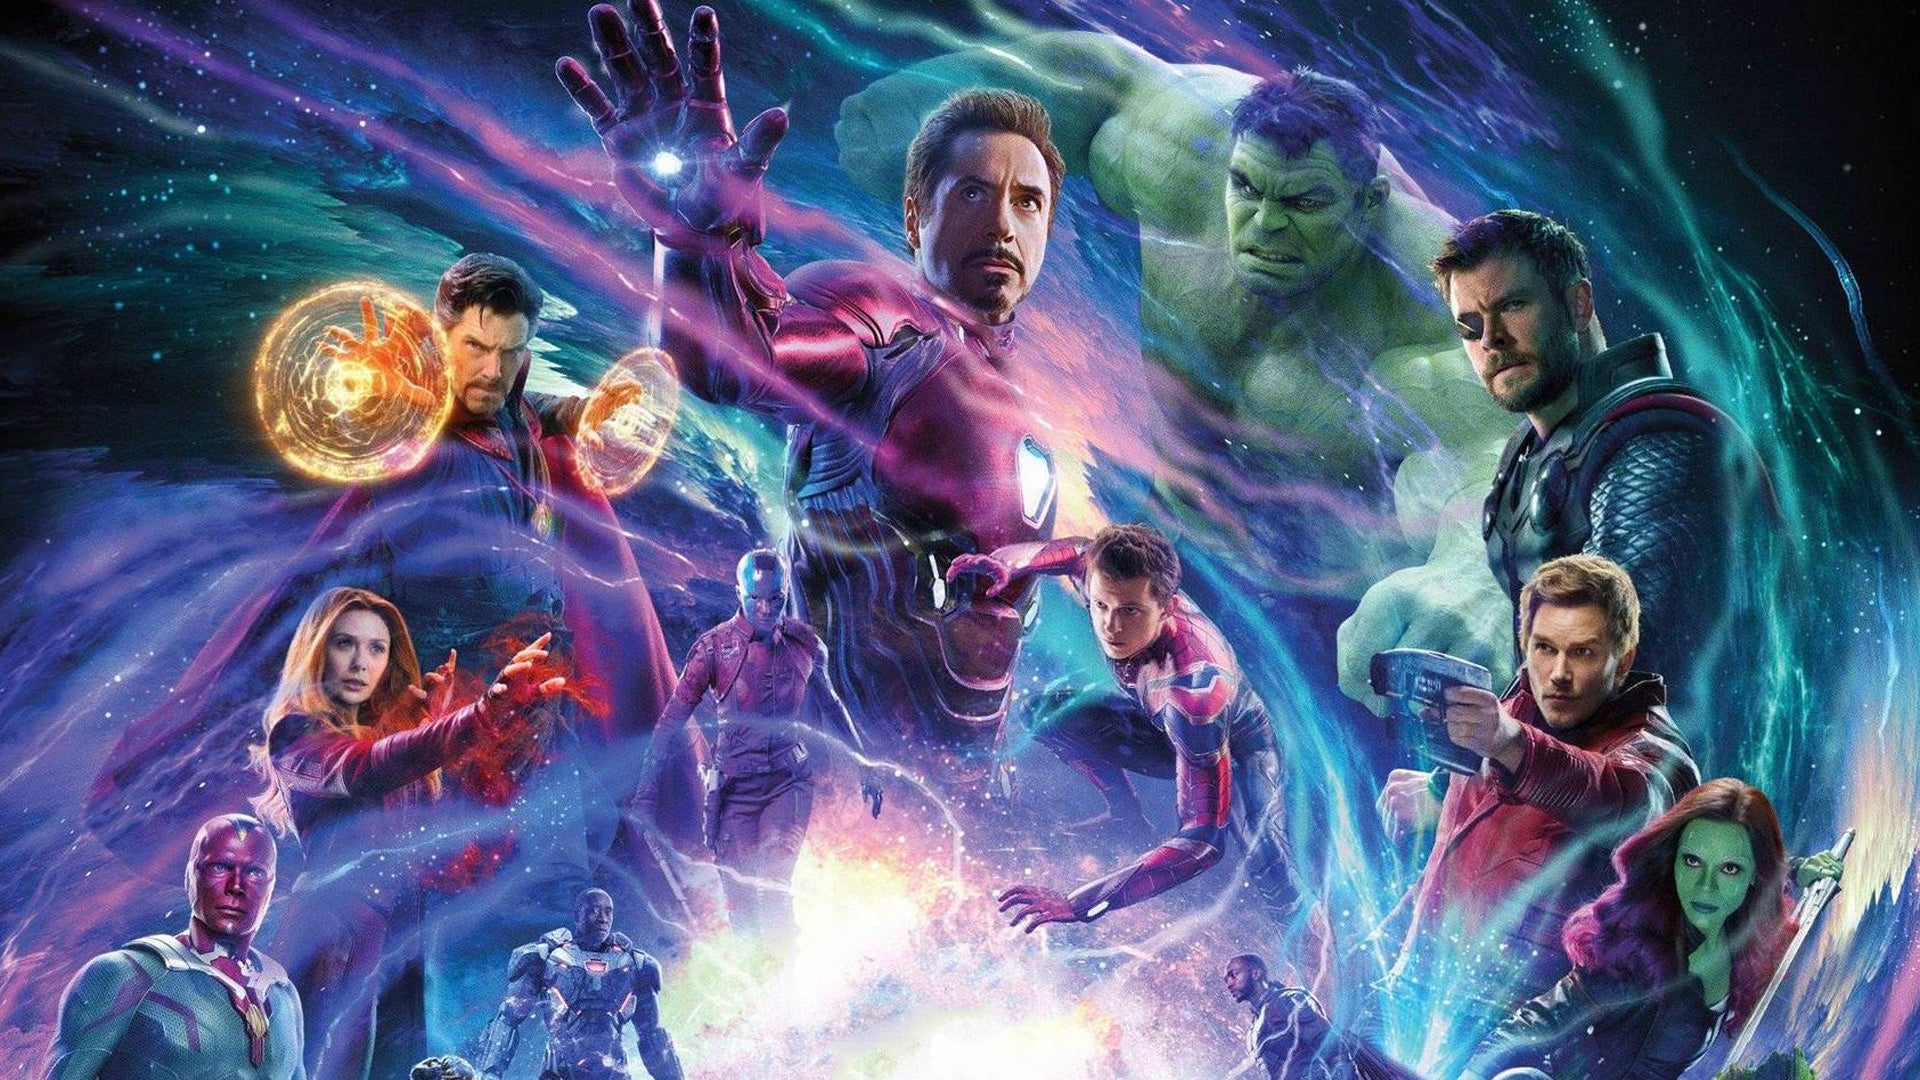 Marvel's Avengers: Infinity War